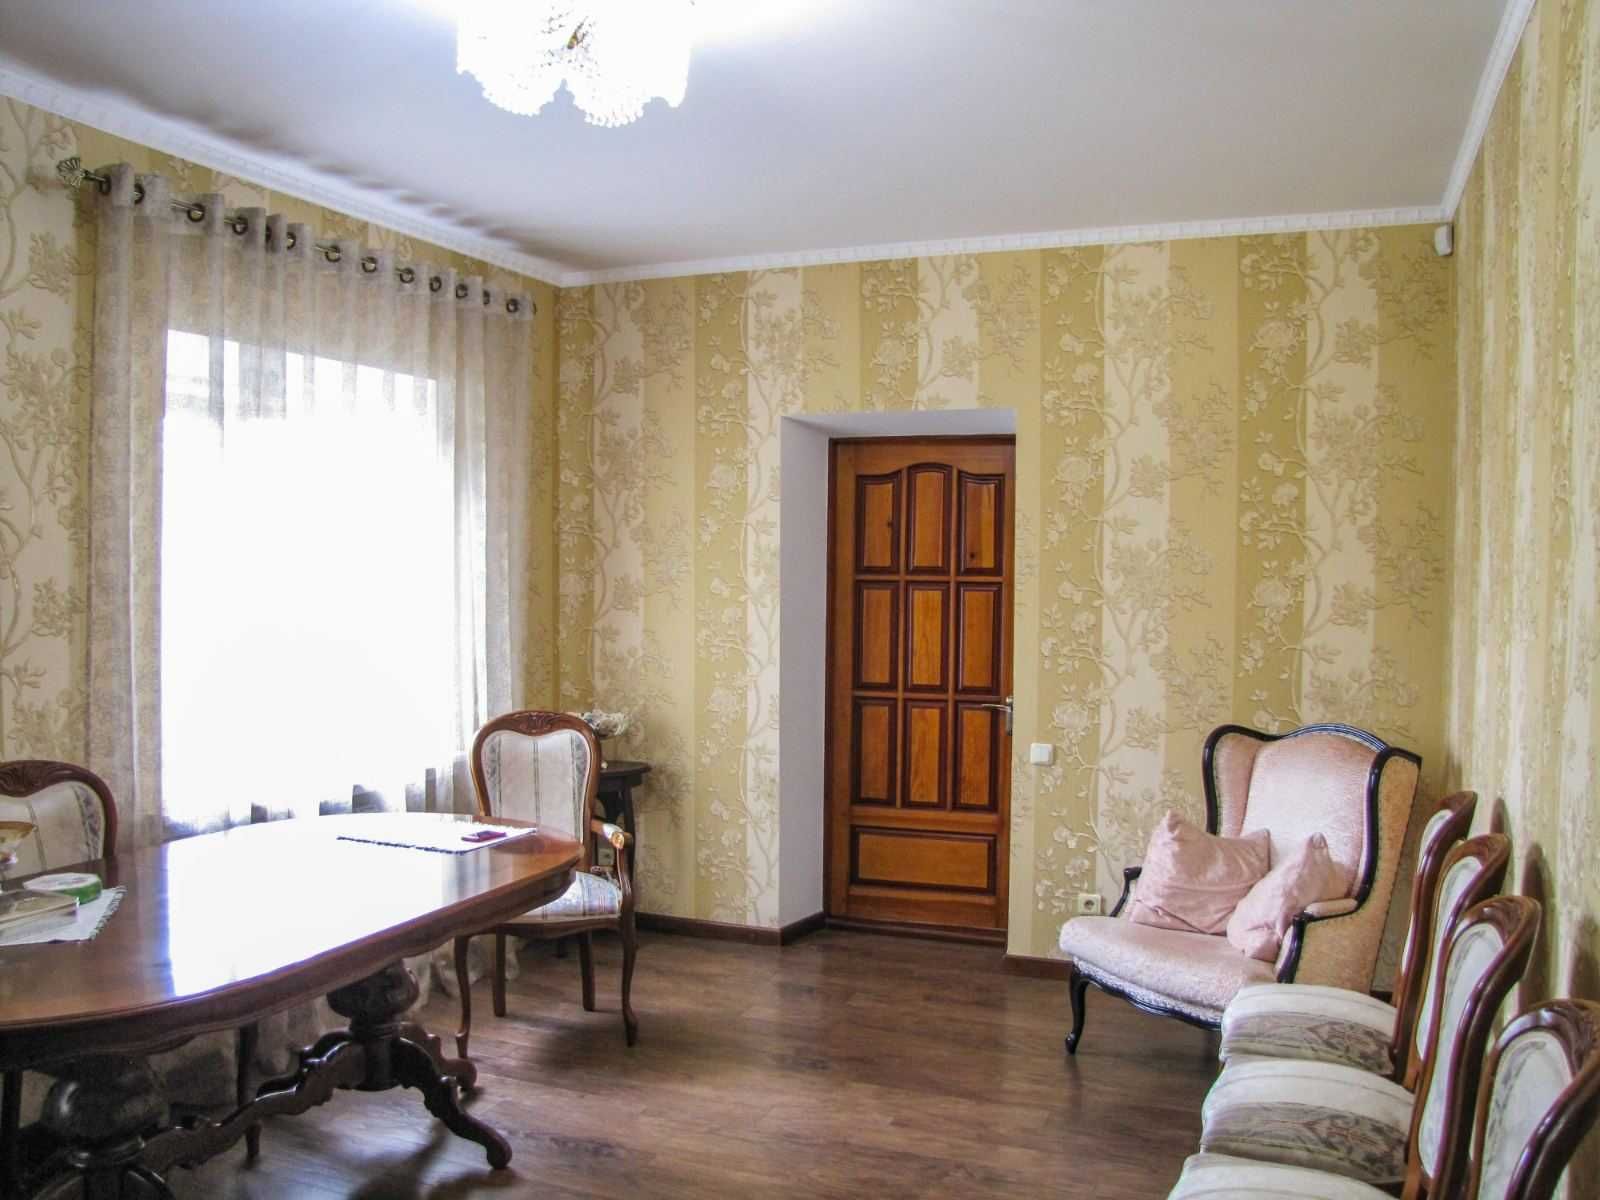 Продам элитный 2-х эт. дом в ЦЕНТРЕ Шевченковского района.